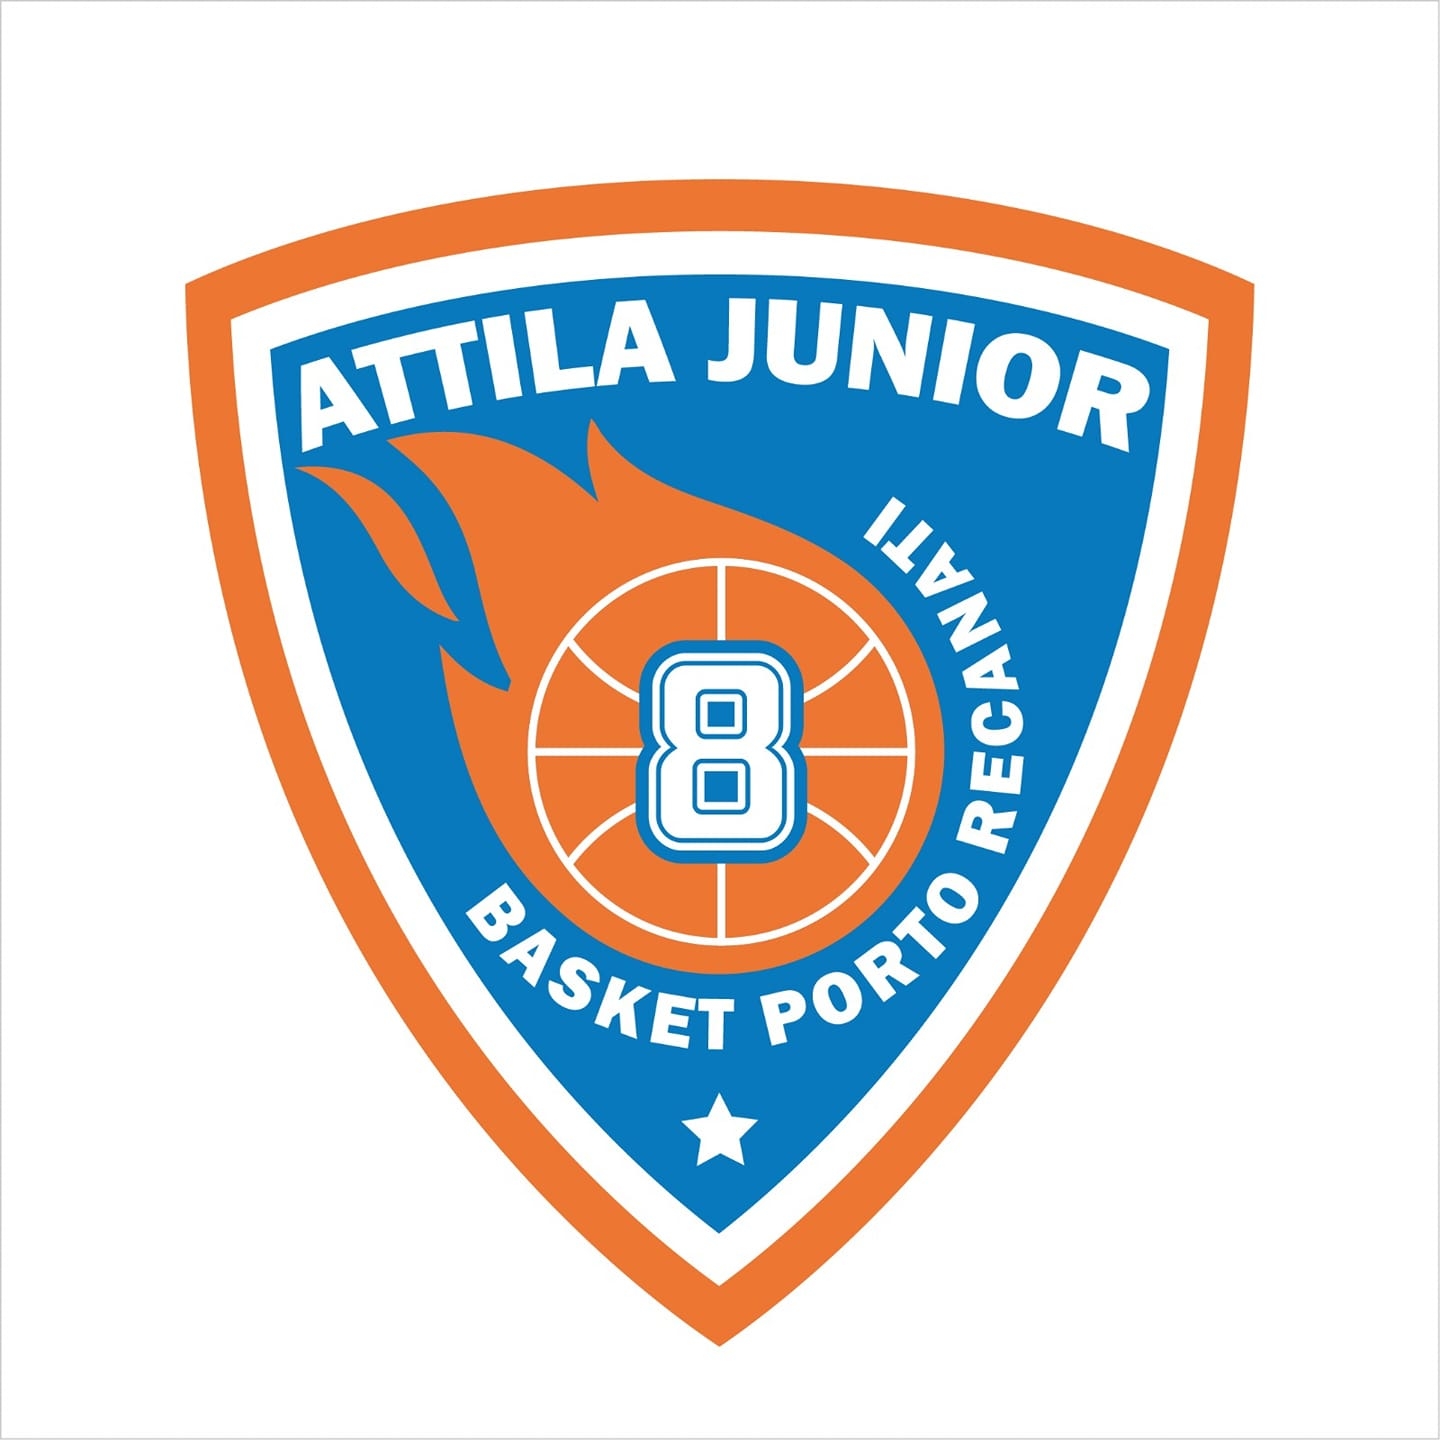 Attila Junior Porto Recanati